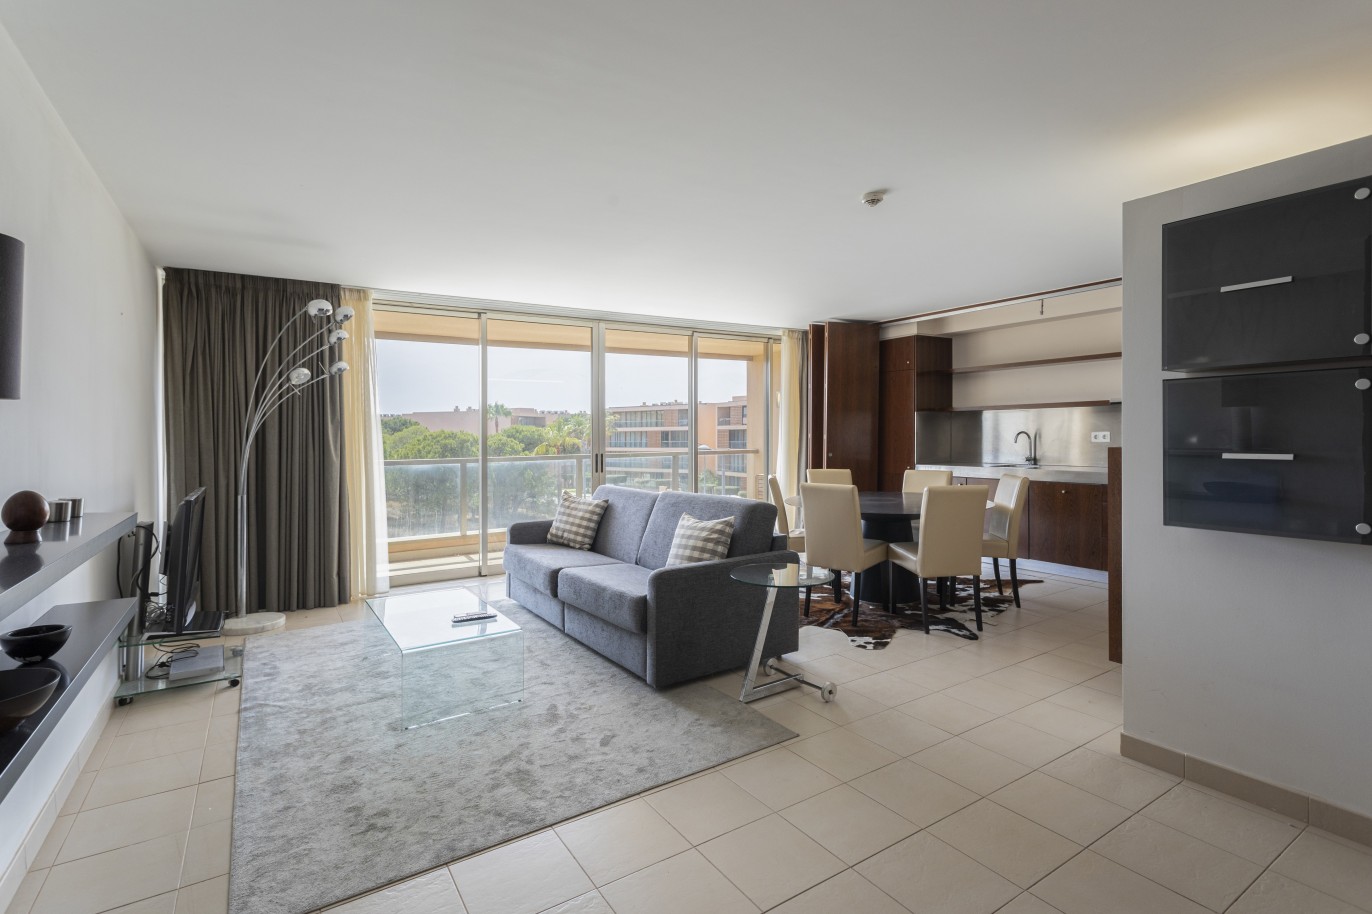 1 bedroom apartment in luxury condominium, for sale in Salgados, Algarve_228180